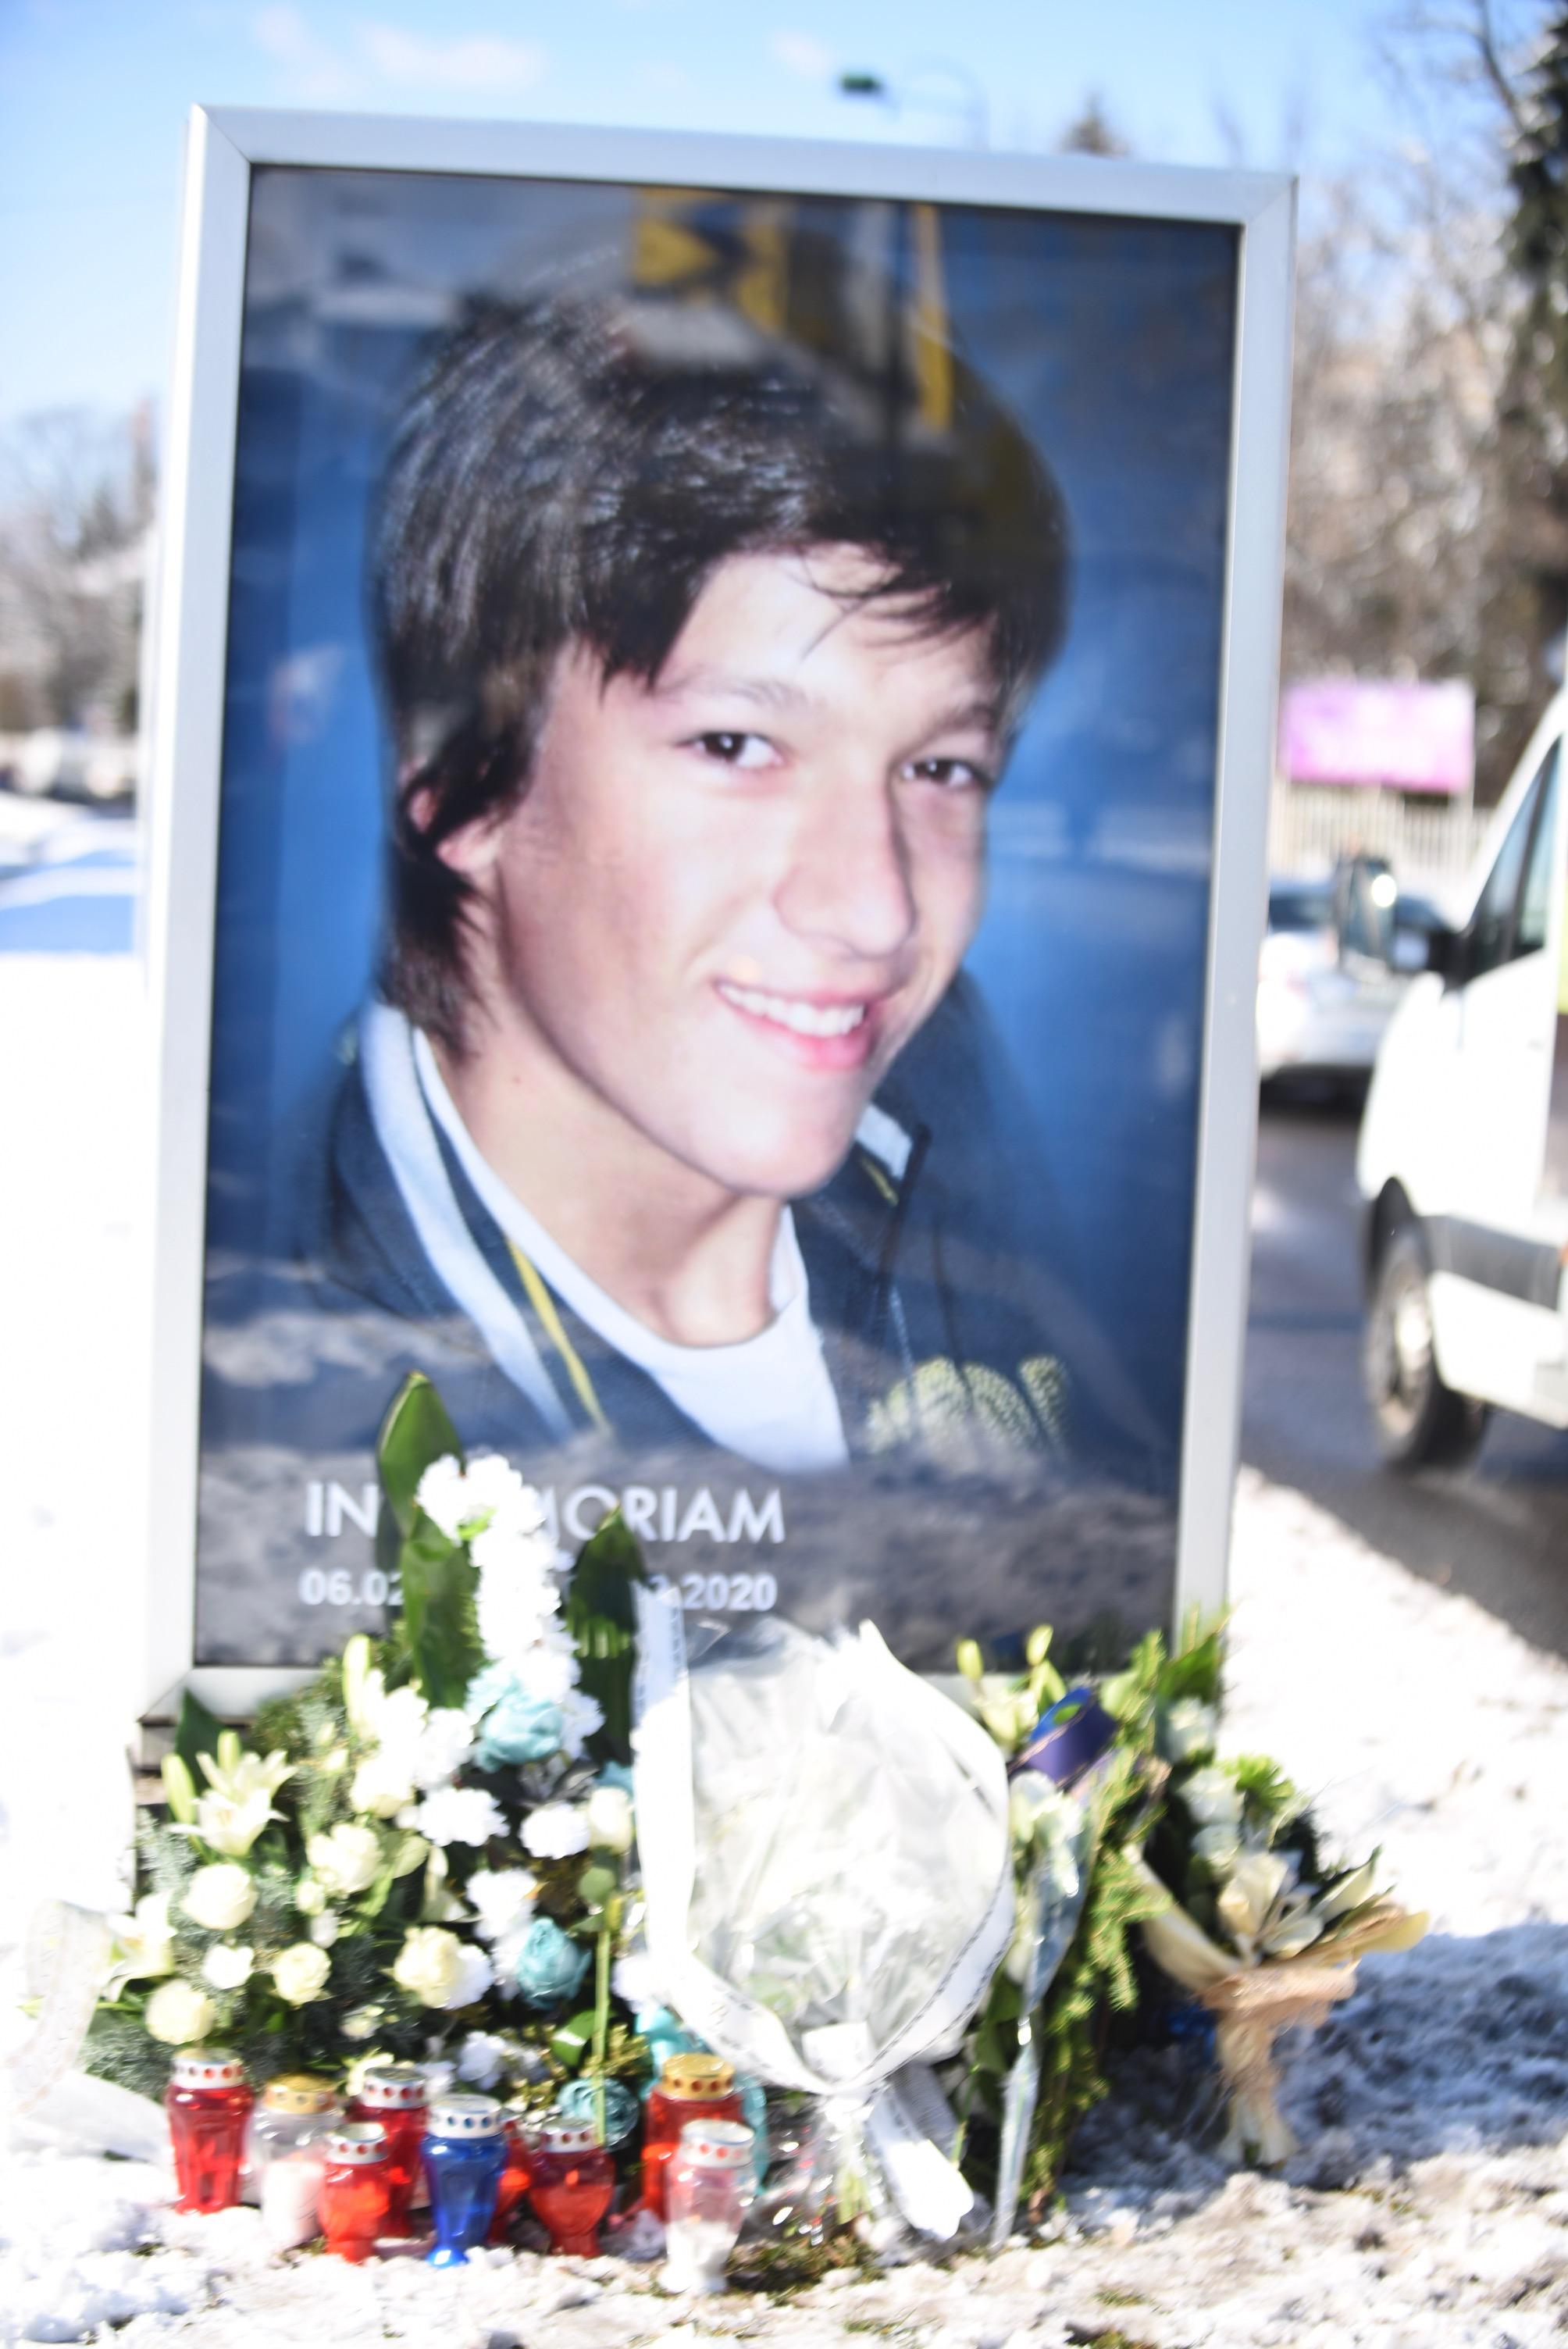 Obilježena godišnjica ubistva Denisa Mrnjavca: Tuga, žal, bol i nevjerica